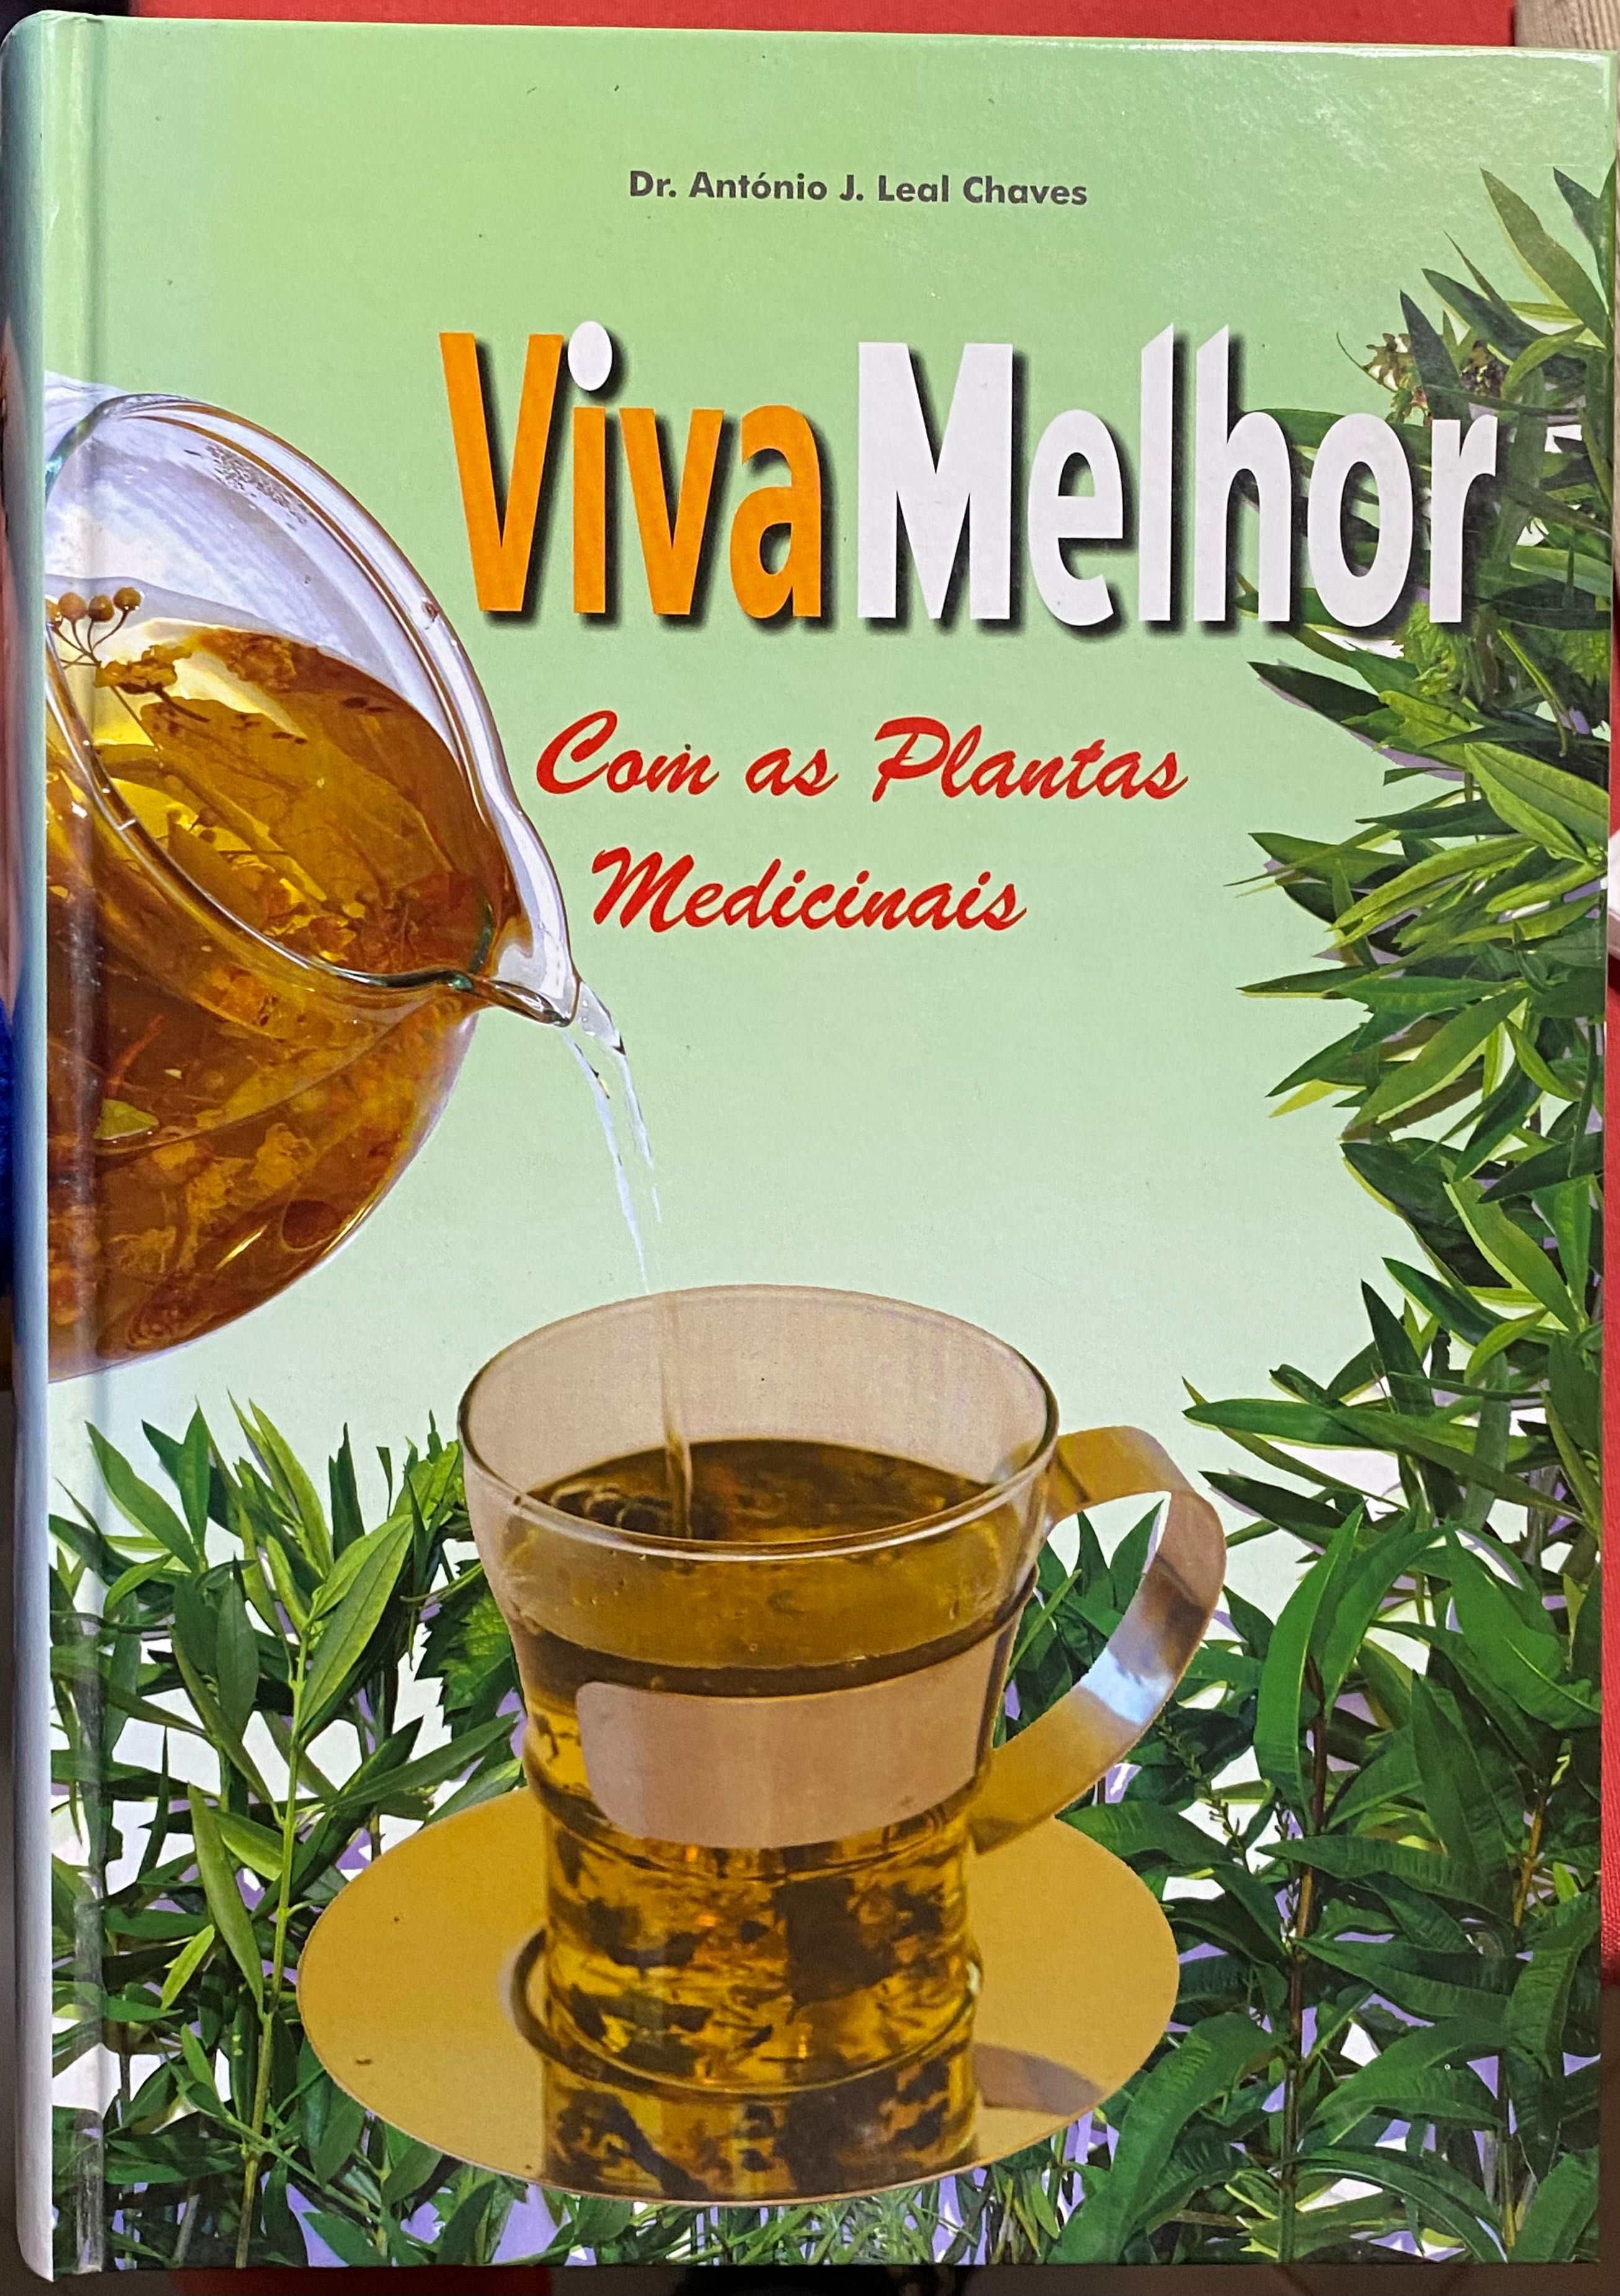 Livro “Viva Melhor com as Plantas Medicinais”